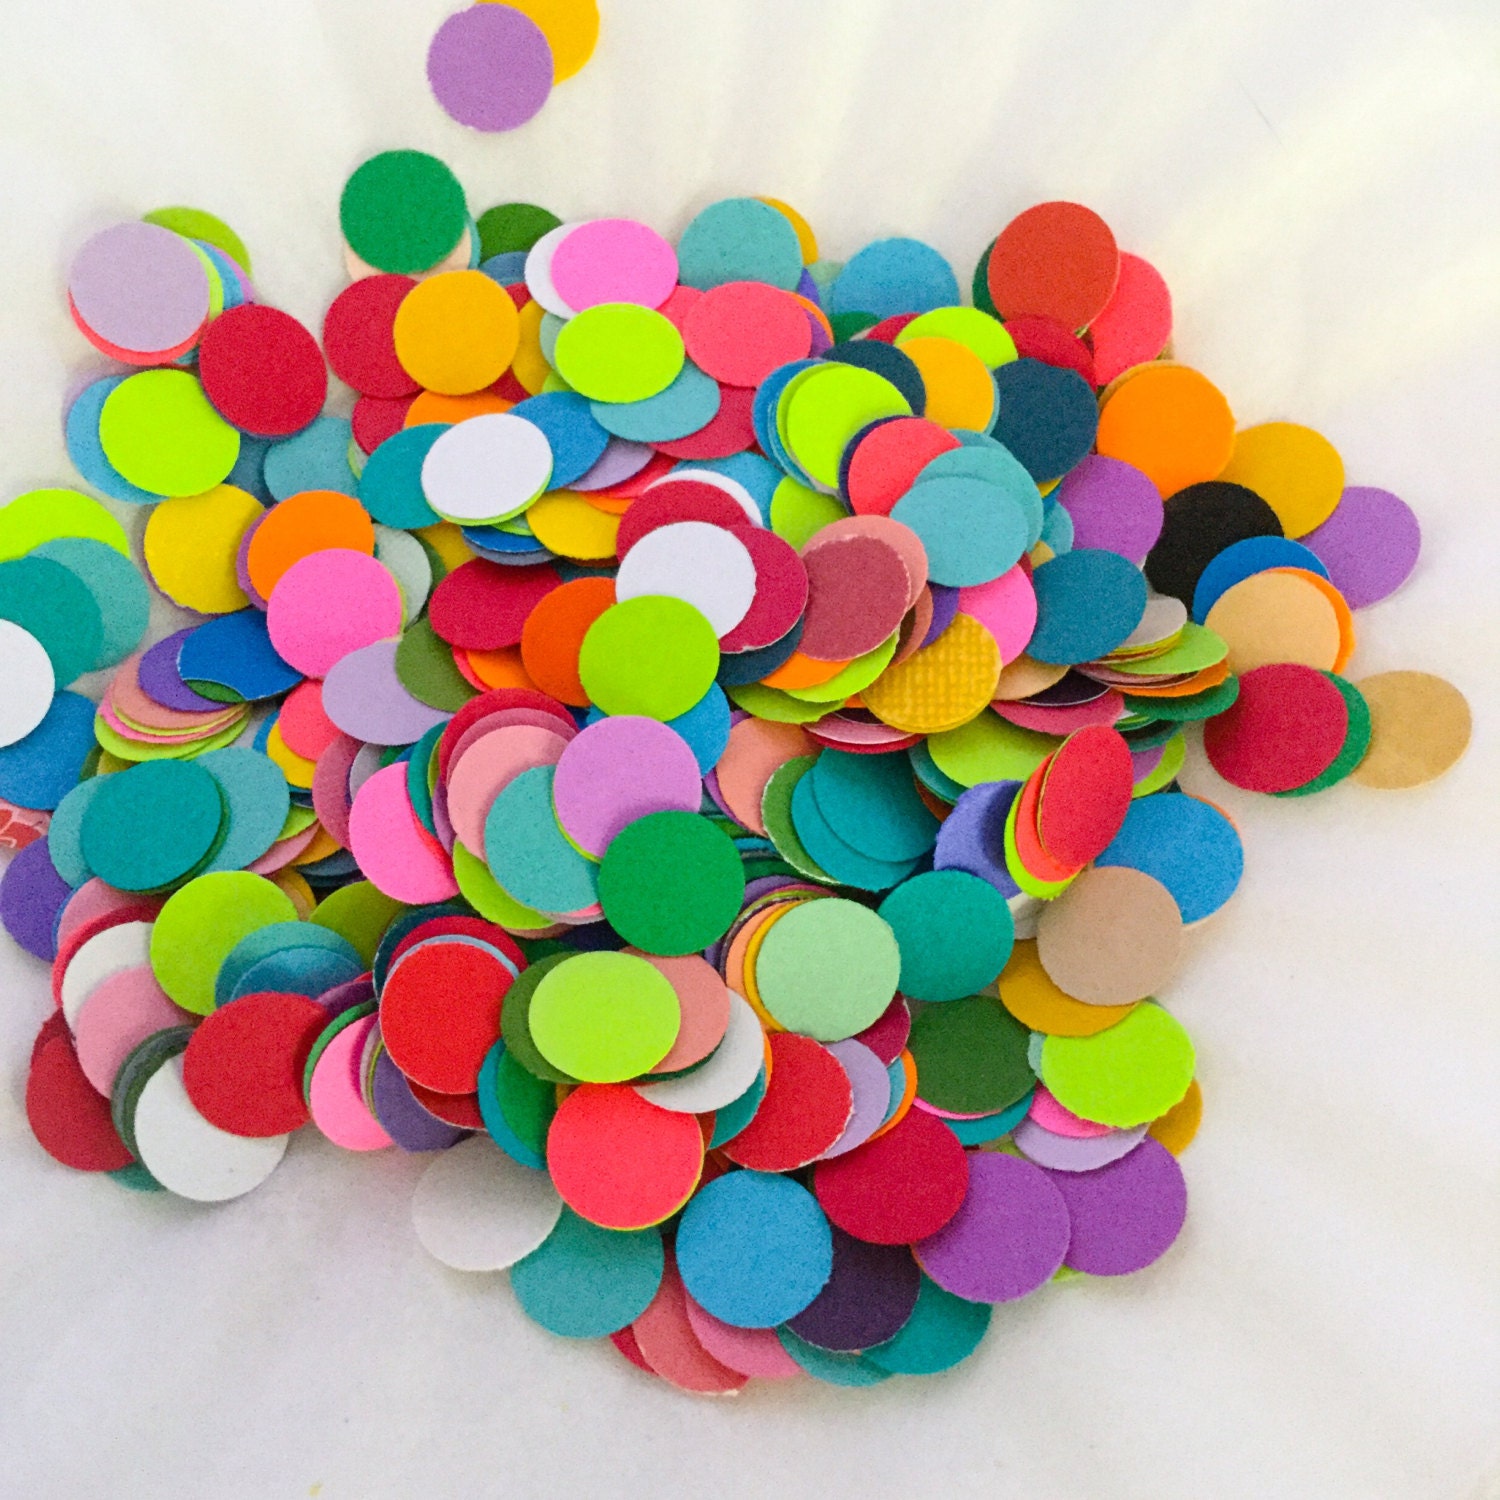 Sale Rainbow Confetti: Colorful Bright Multicolor